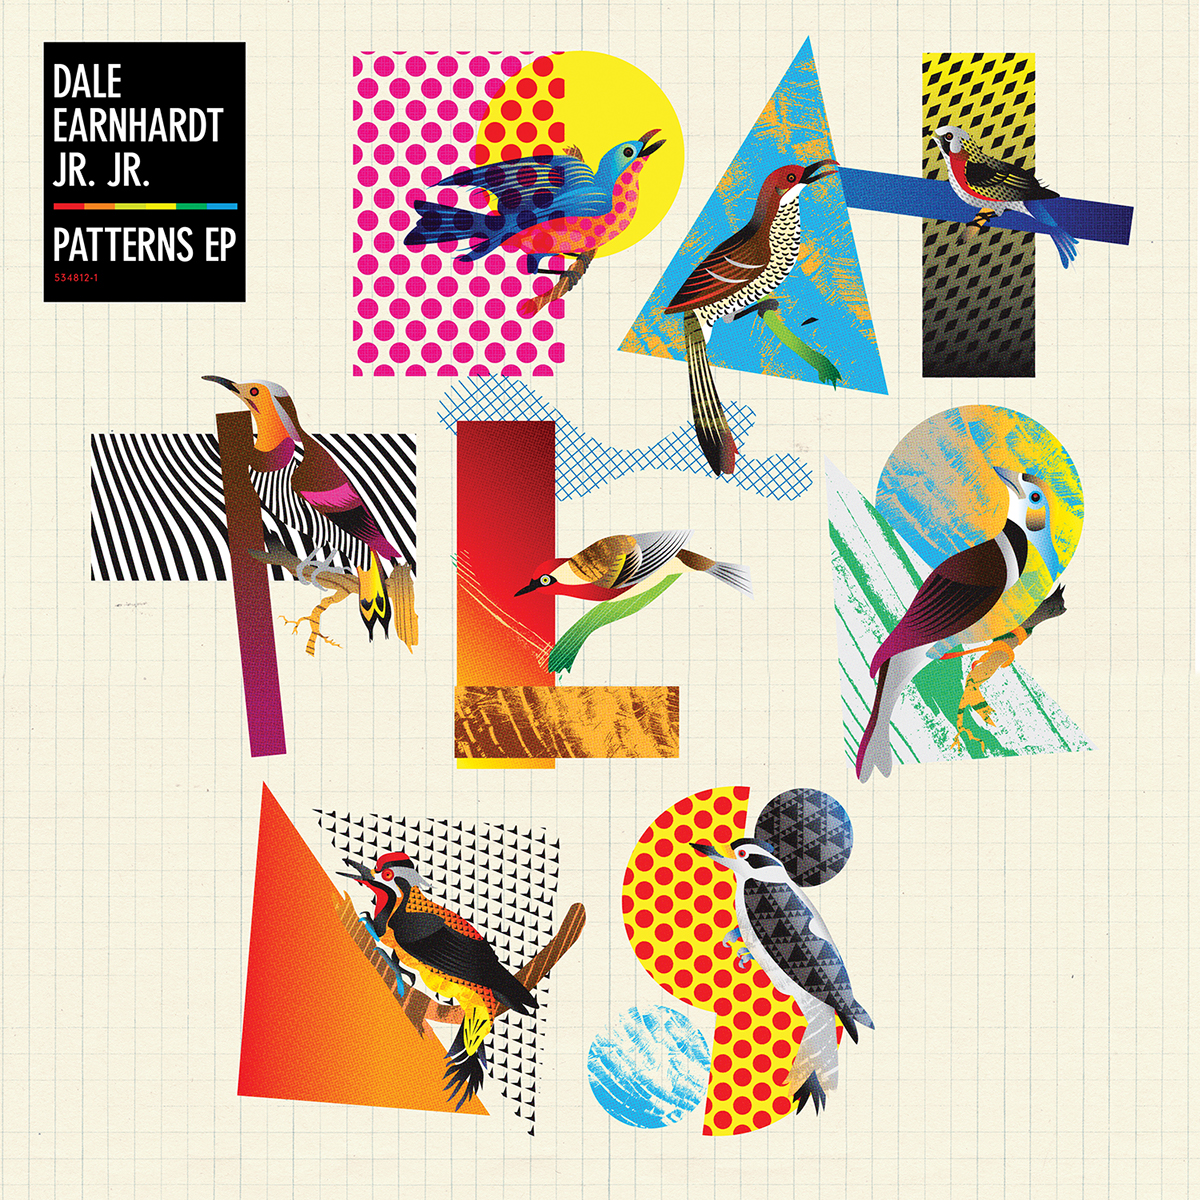 Dale Earnhardt Jr. album cover vinyl LP Music Packaging birds Patterns pattern 80s colorful vinrant energy happy indie indie rock